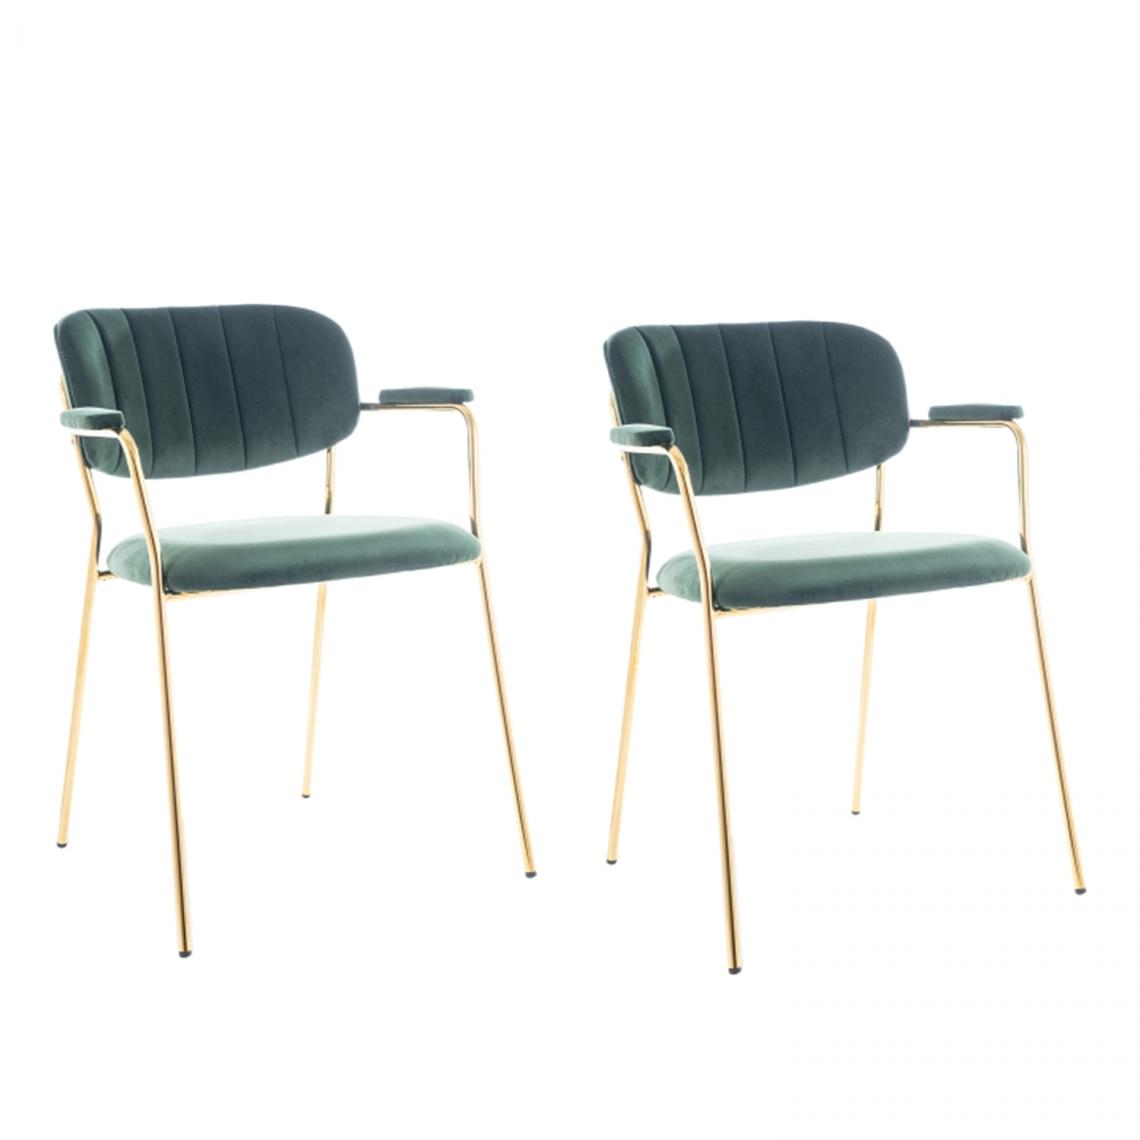 Hucoco - CARMO - Lot de 2 chaises matelassée avec accoudoirs - 80x49x55 cm - Cadre en métal - Tissu velours - Vert - Chaises